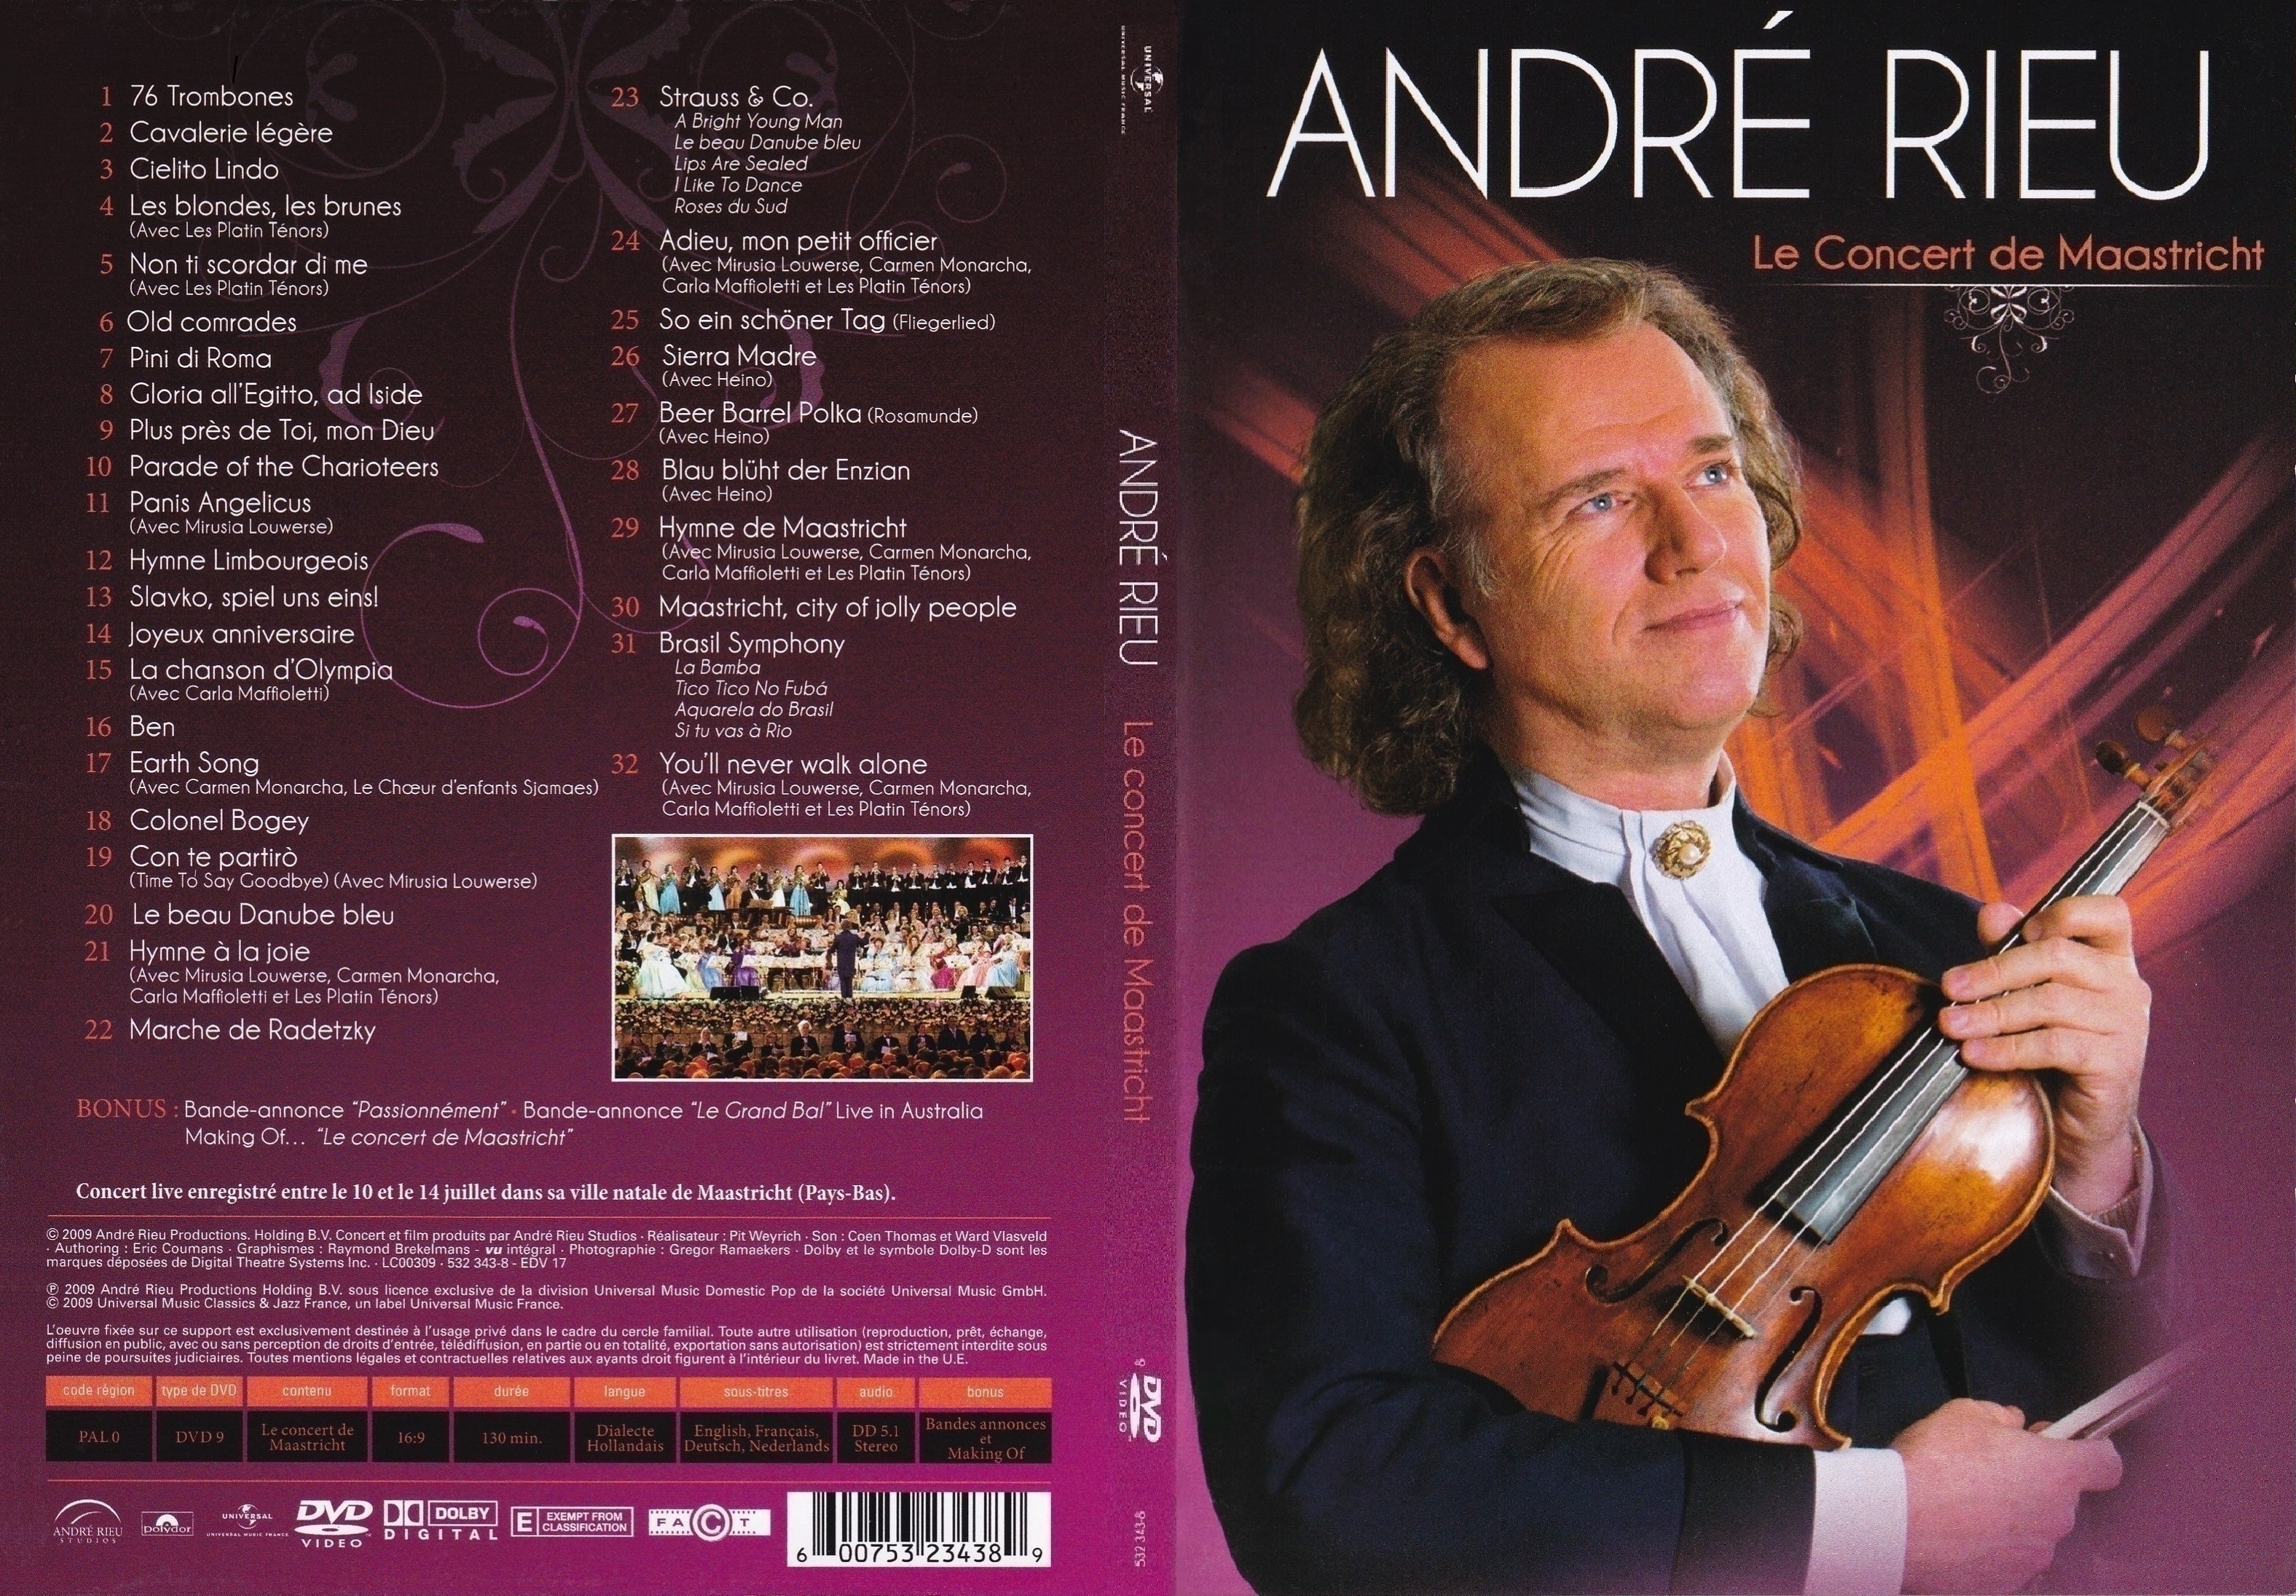 Jaquette DVD Andre Rieu Le Concert de Maastricht